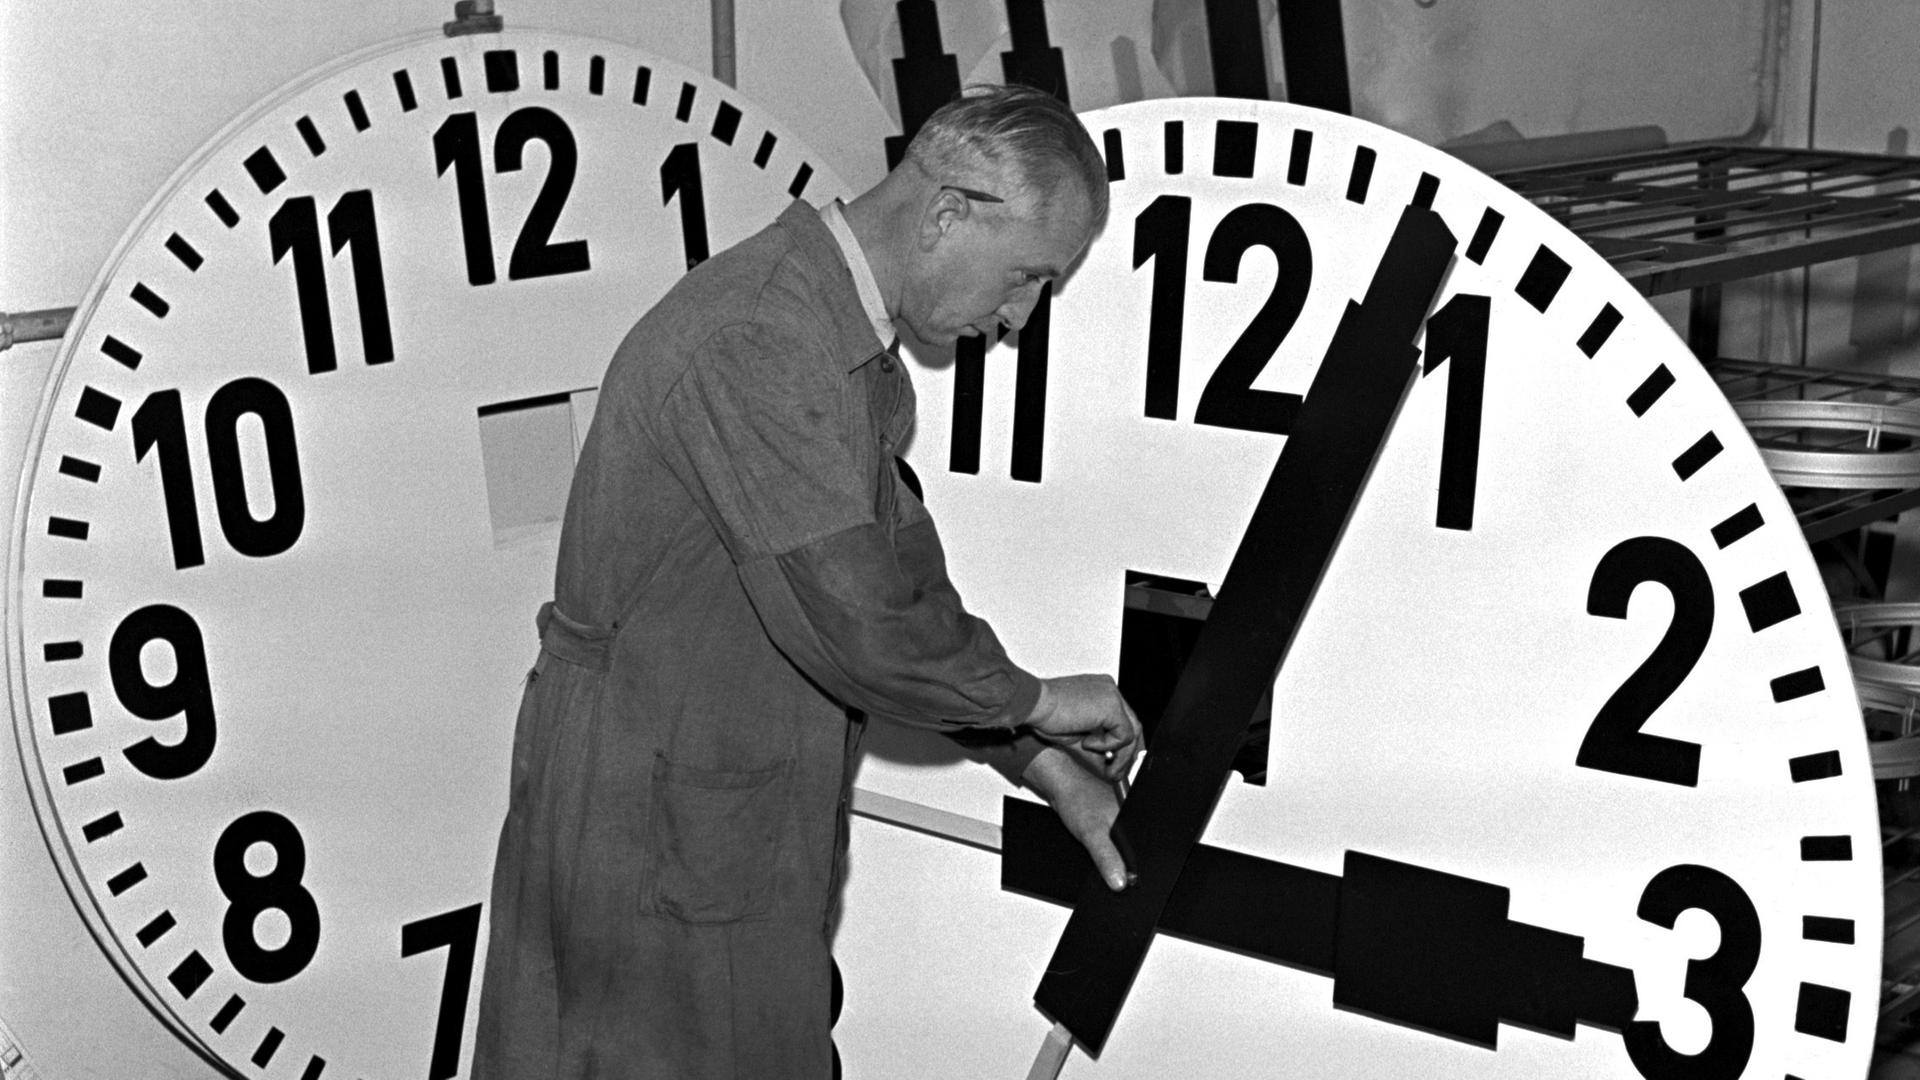 Historisches Schwarzeißfoto eines Uhrmachers im Arbeitskittel, der mit einem großen Ziffernblatt hantiert.